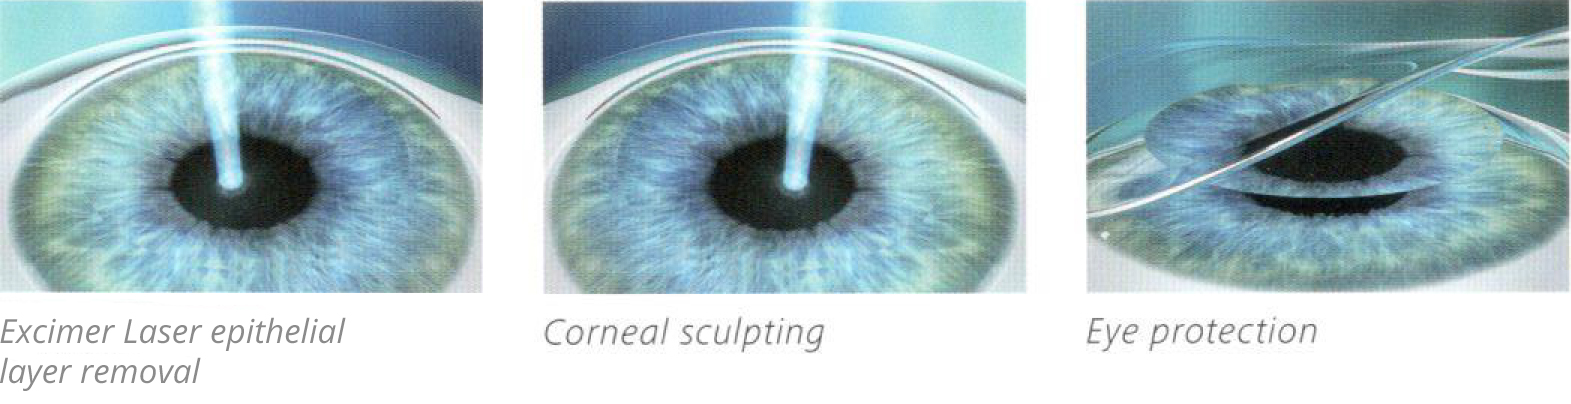 Augenlaser-Methoden mit Oberflächenbehandlung: PRK, LASEK, Epi-LASIK